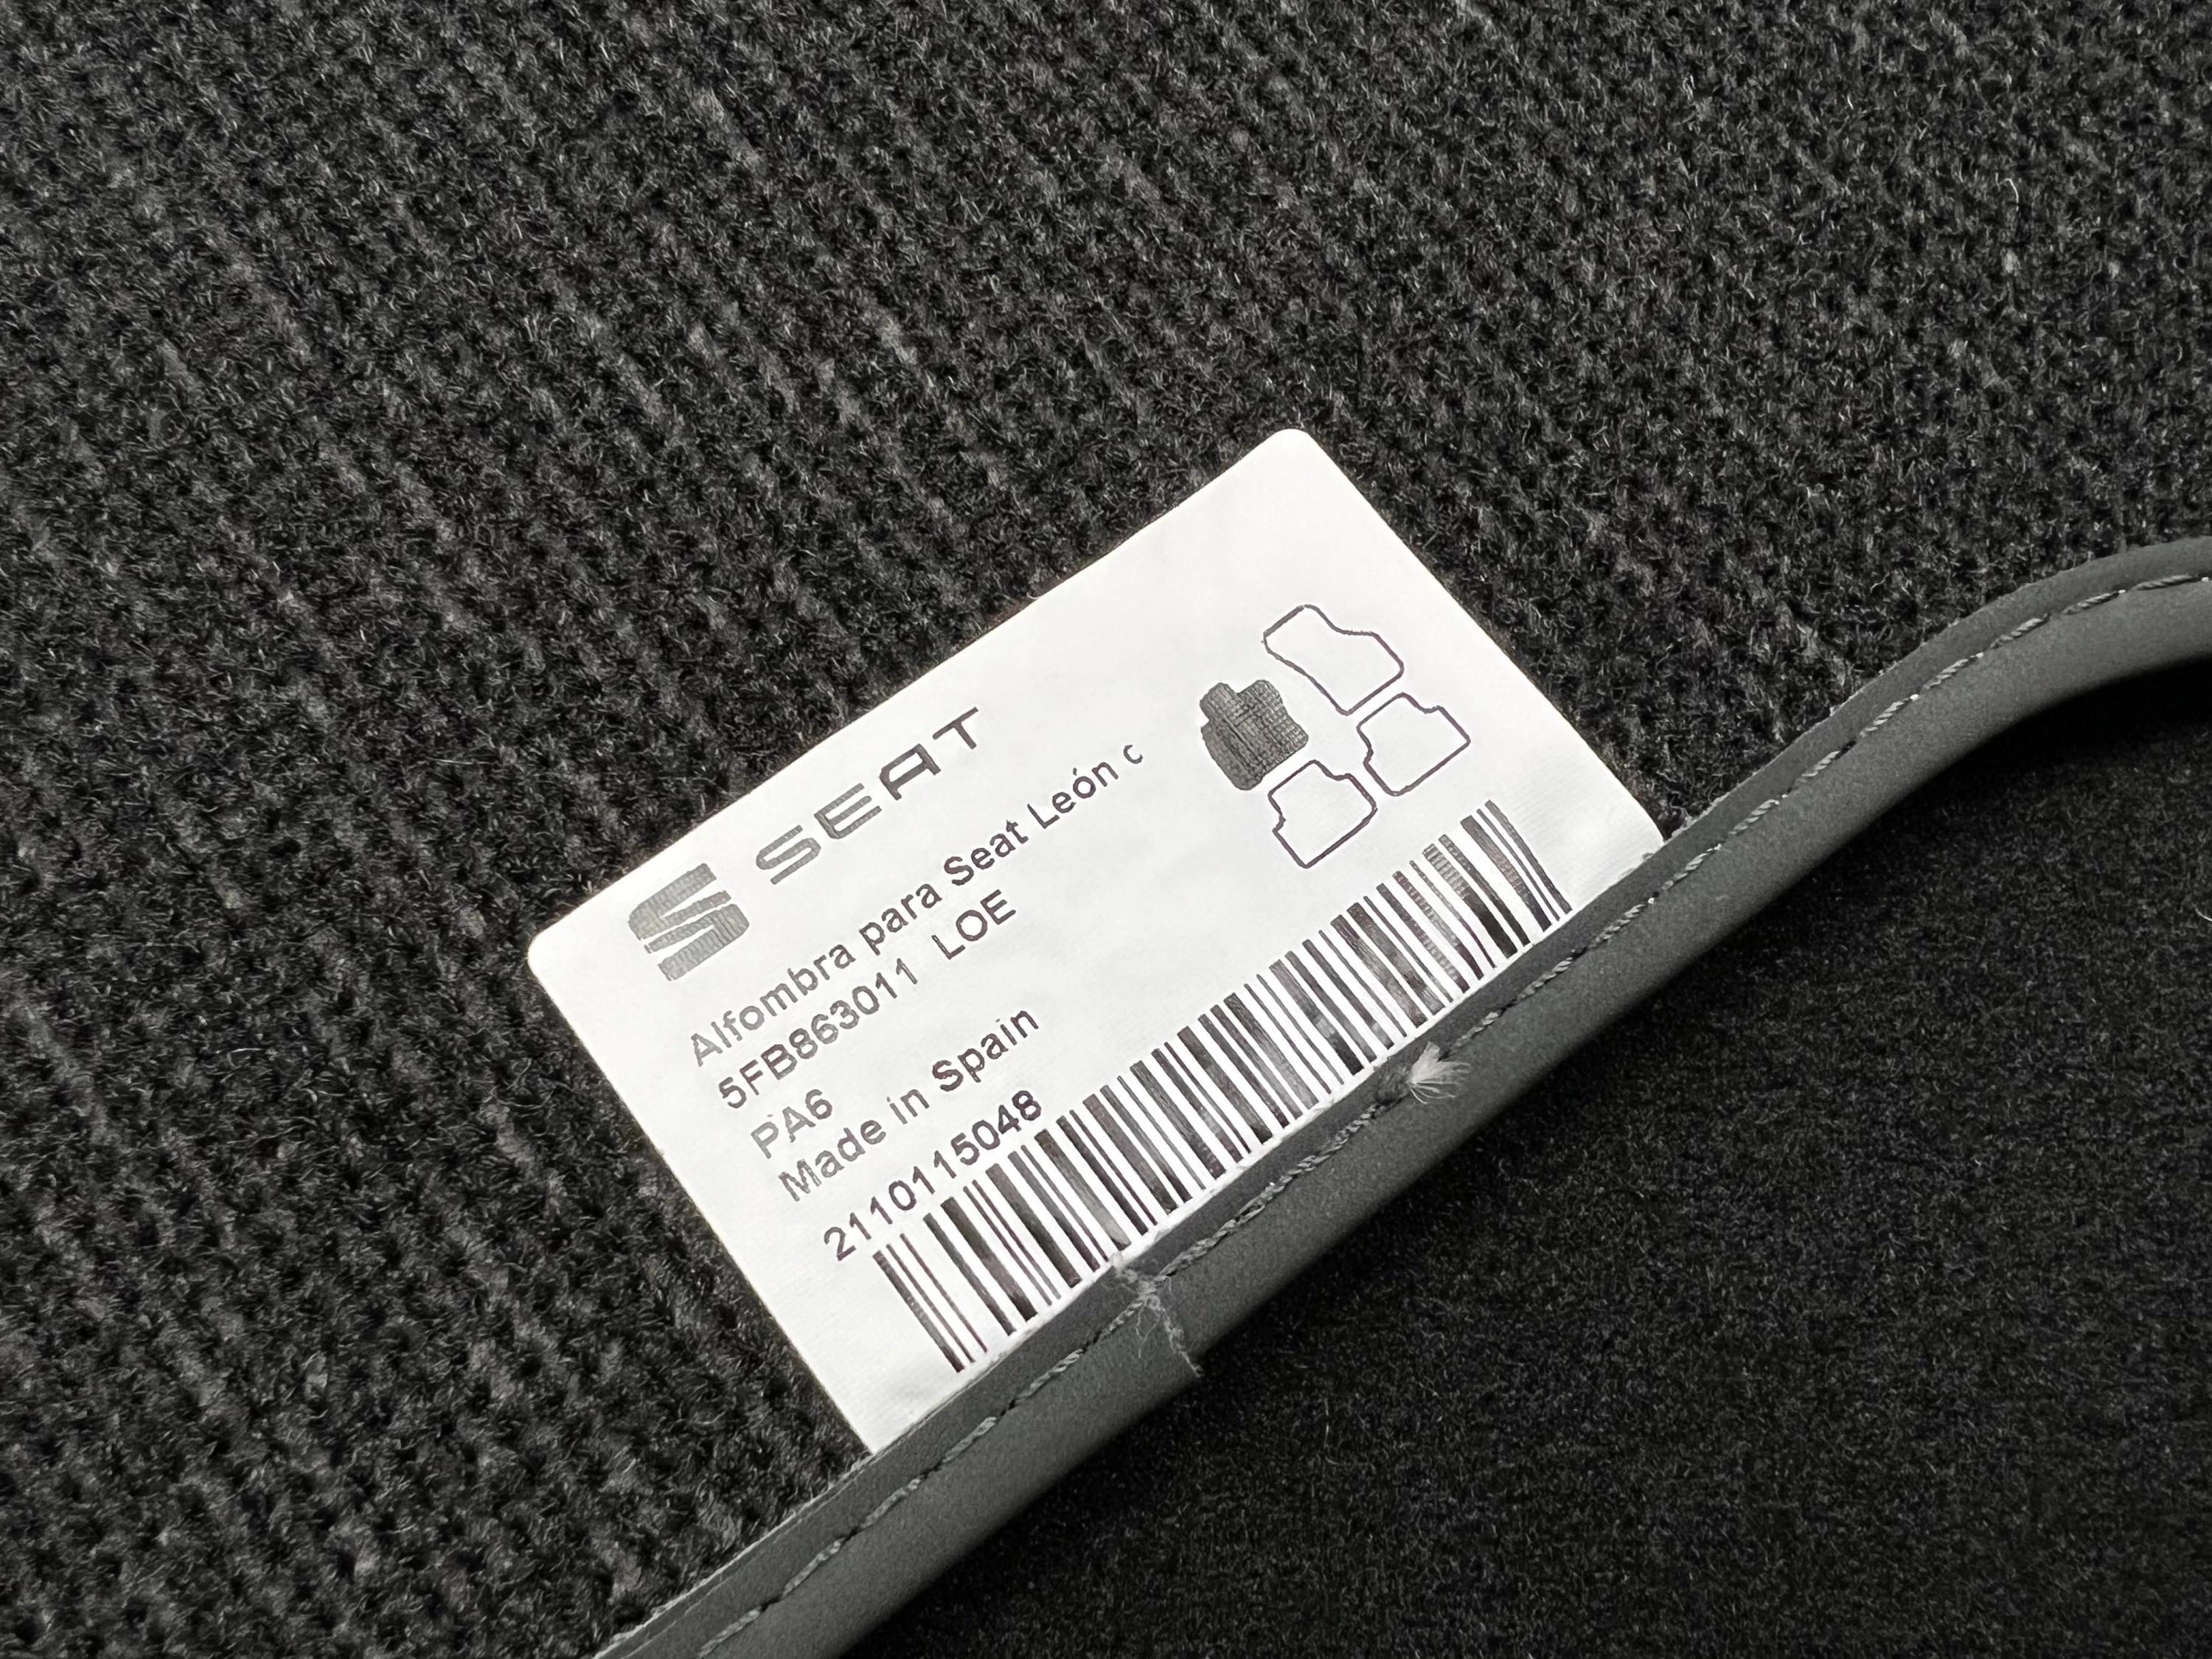  Seat 5F0061675D041 Trail Textile Alfombras de suelo, 4 x  Alfombras de tela, alfombrillas de terciopelo, color negro, con letras Leon  : Automotriz